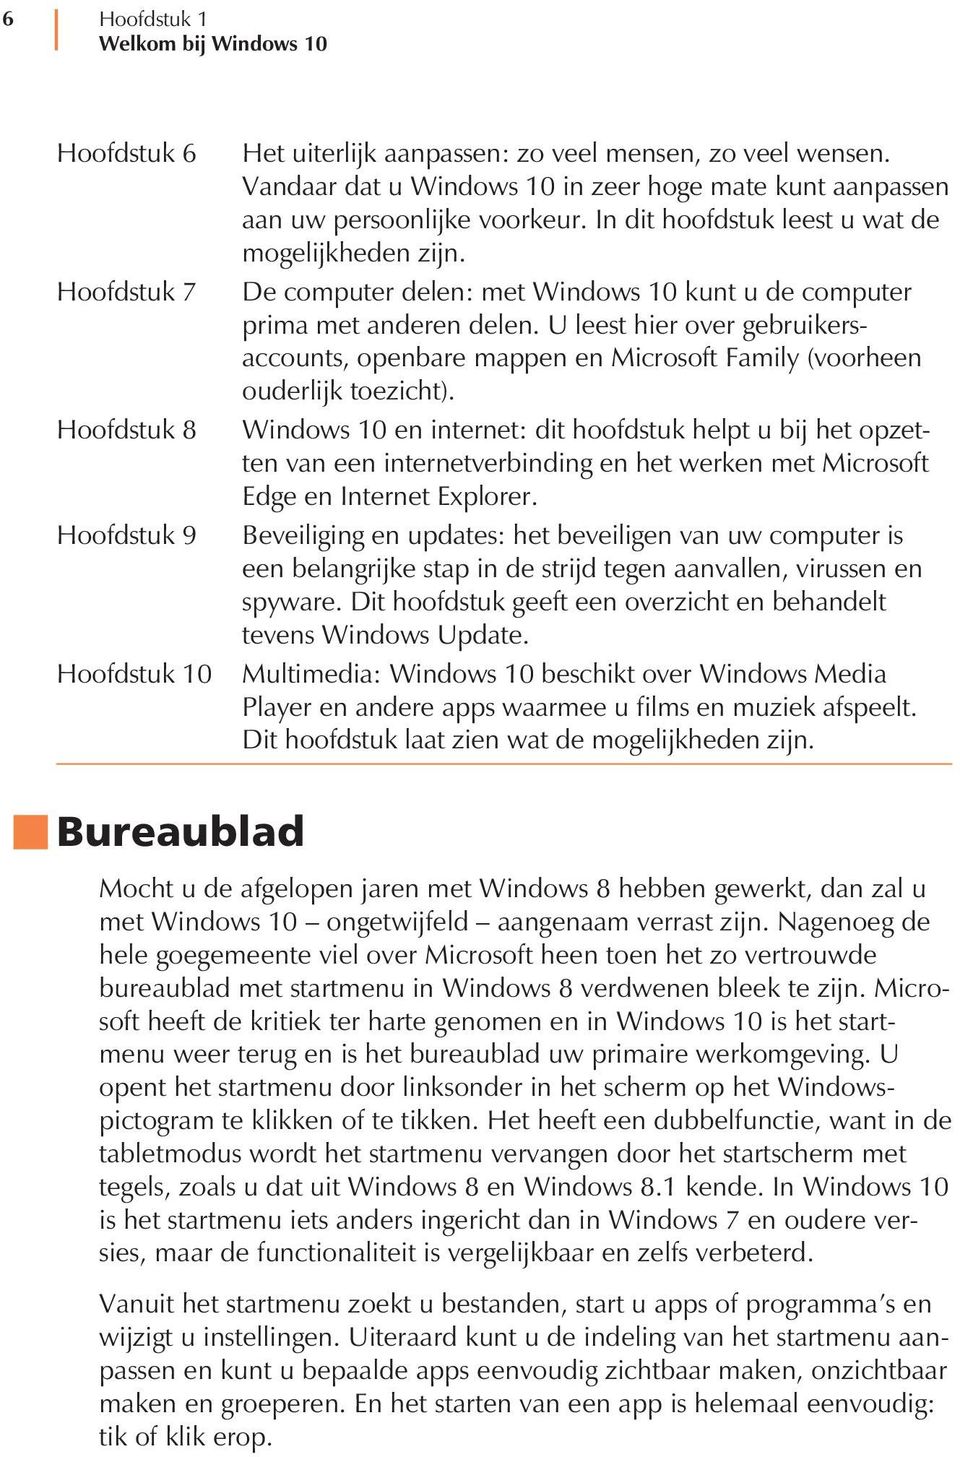 De computer delen: met Windows 10 kunt u de computer prima met anderen delen. U leest hier over gebruikersaccounts, openbare mappen en Microsoft Family (voorheen ouderlijk toezicht).